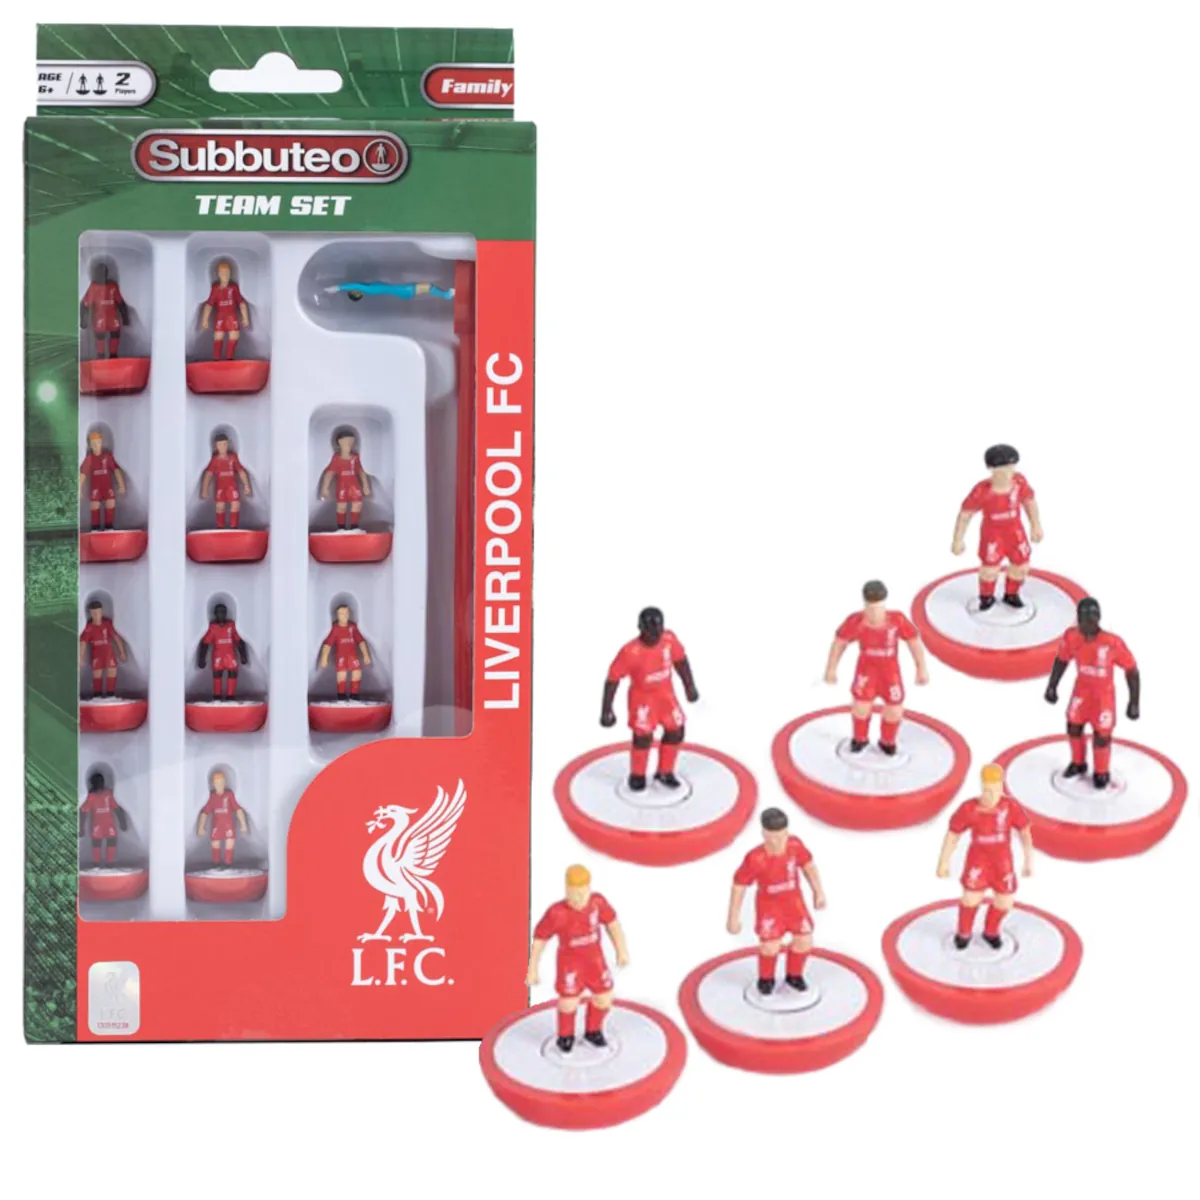 TM-05272 Liverpool F.C. Subbuteo Team Set